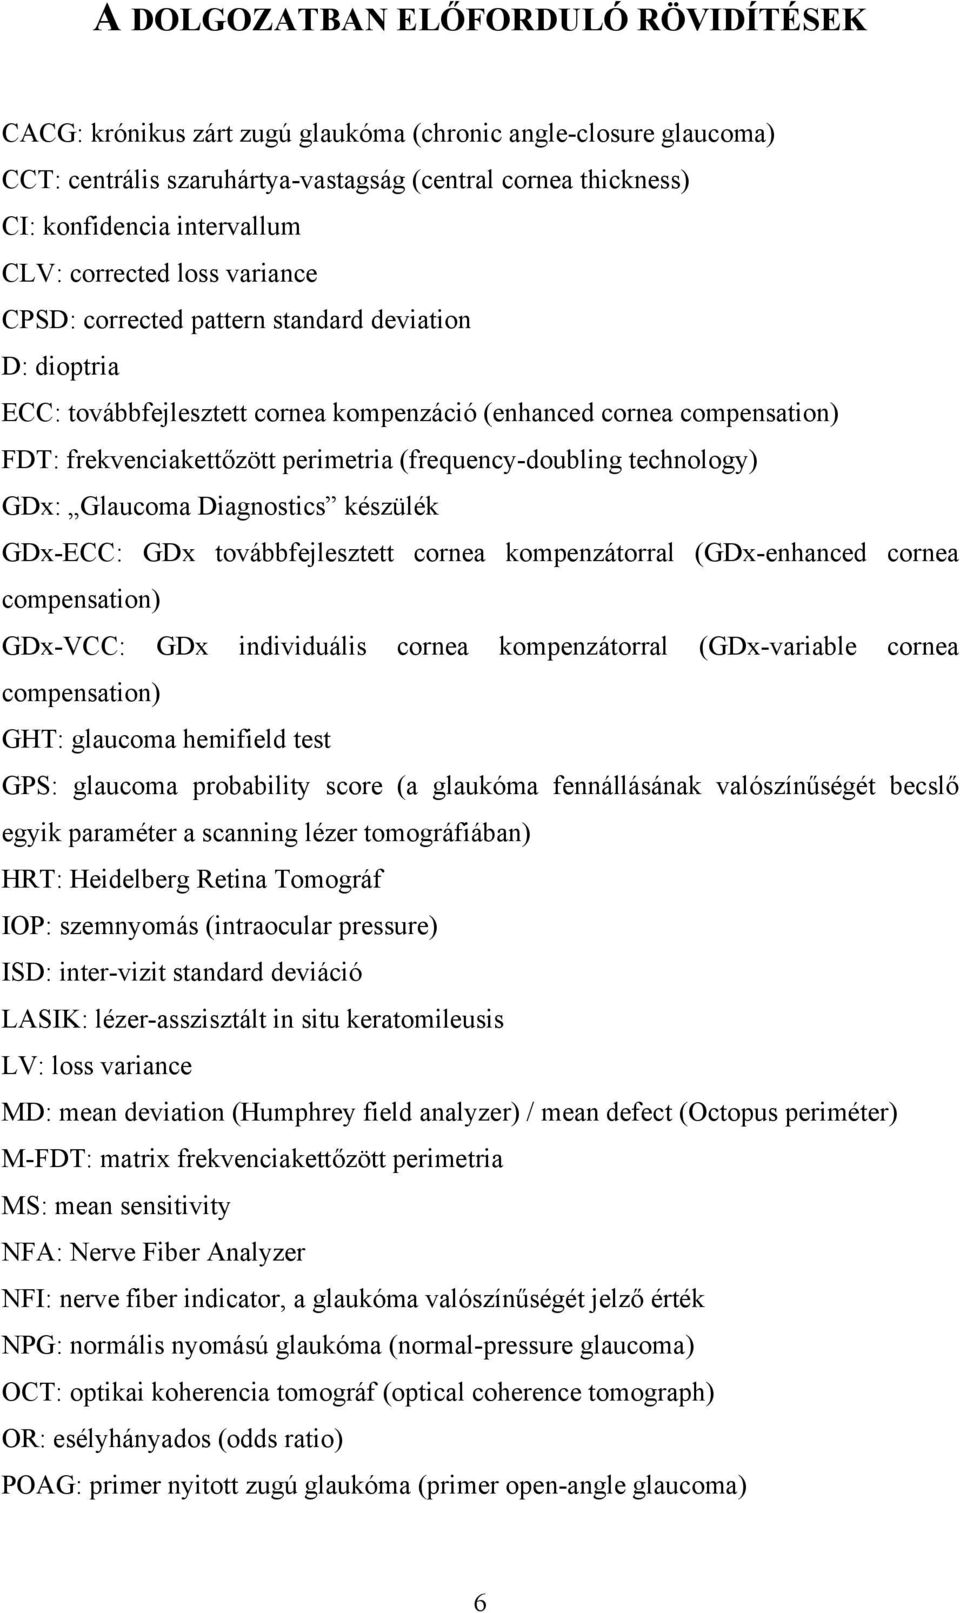 (frequency-doubling technology) GDx: Glaucoma Diagnostics készülék GDx-ECC: GDx továbbfejlesztett cornea kompenzátorral (GDx-enhanced cornea compensation) GDx-VCC: GDx individuális cornea